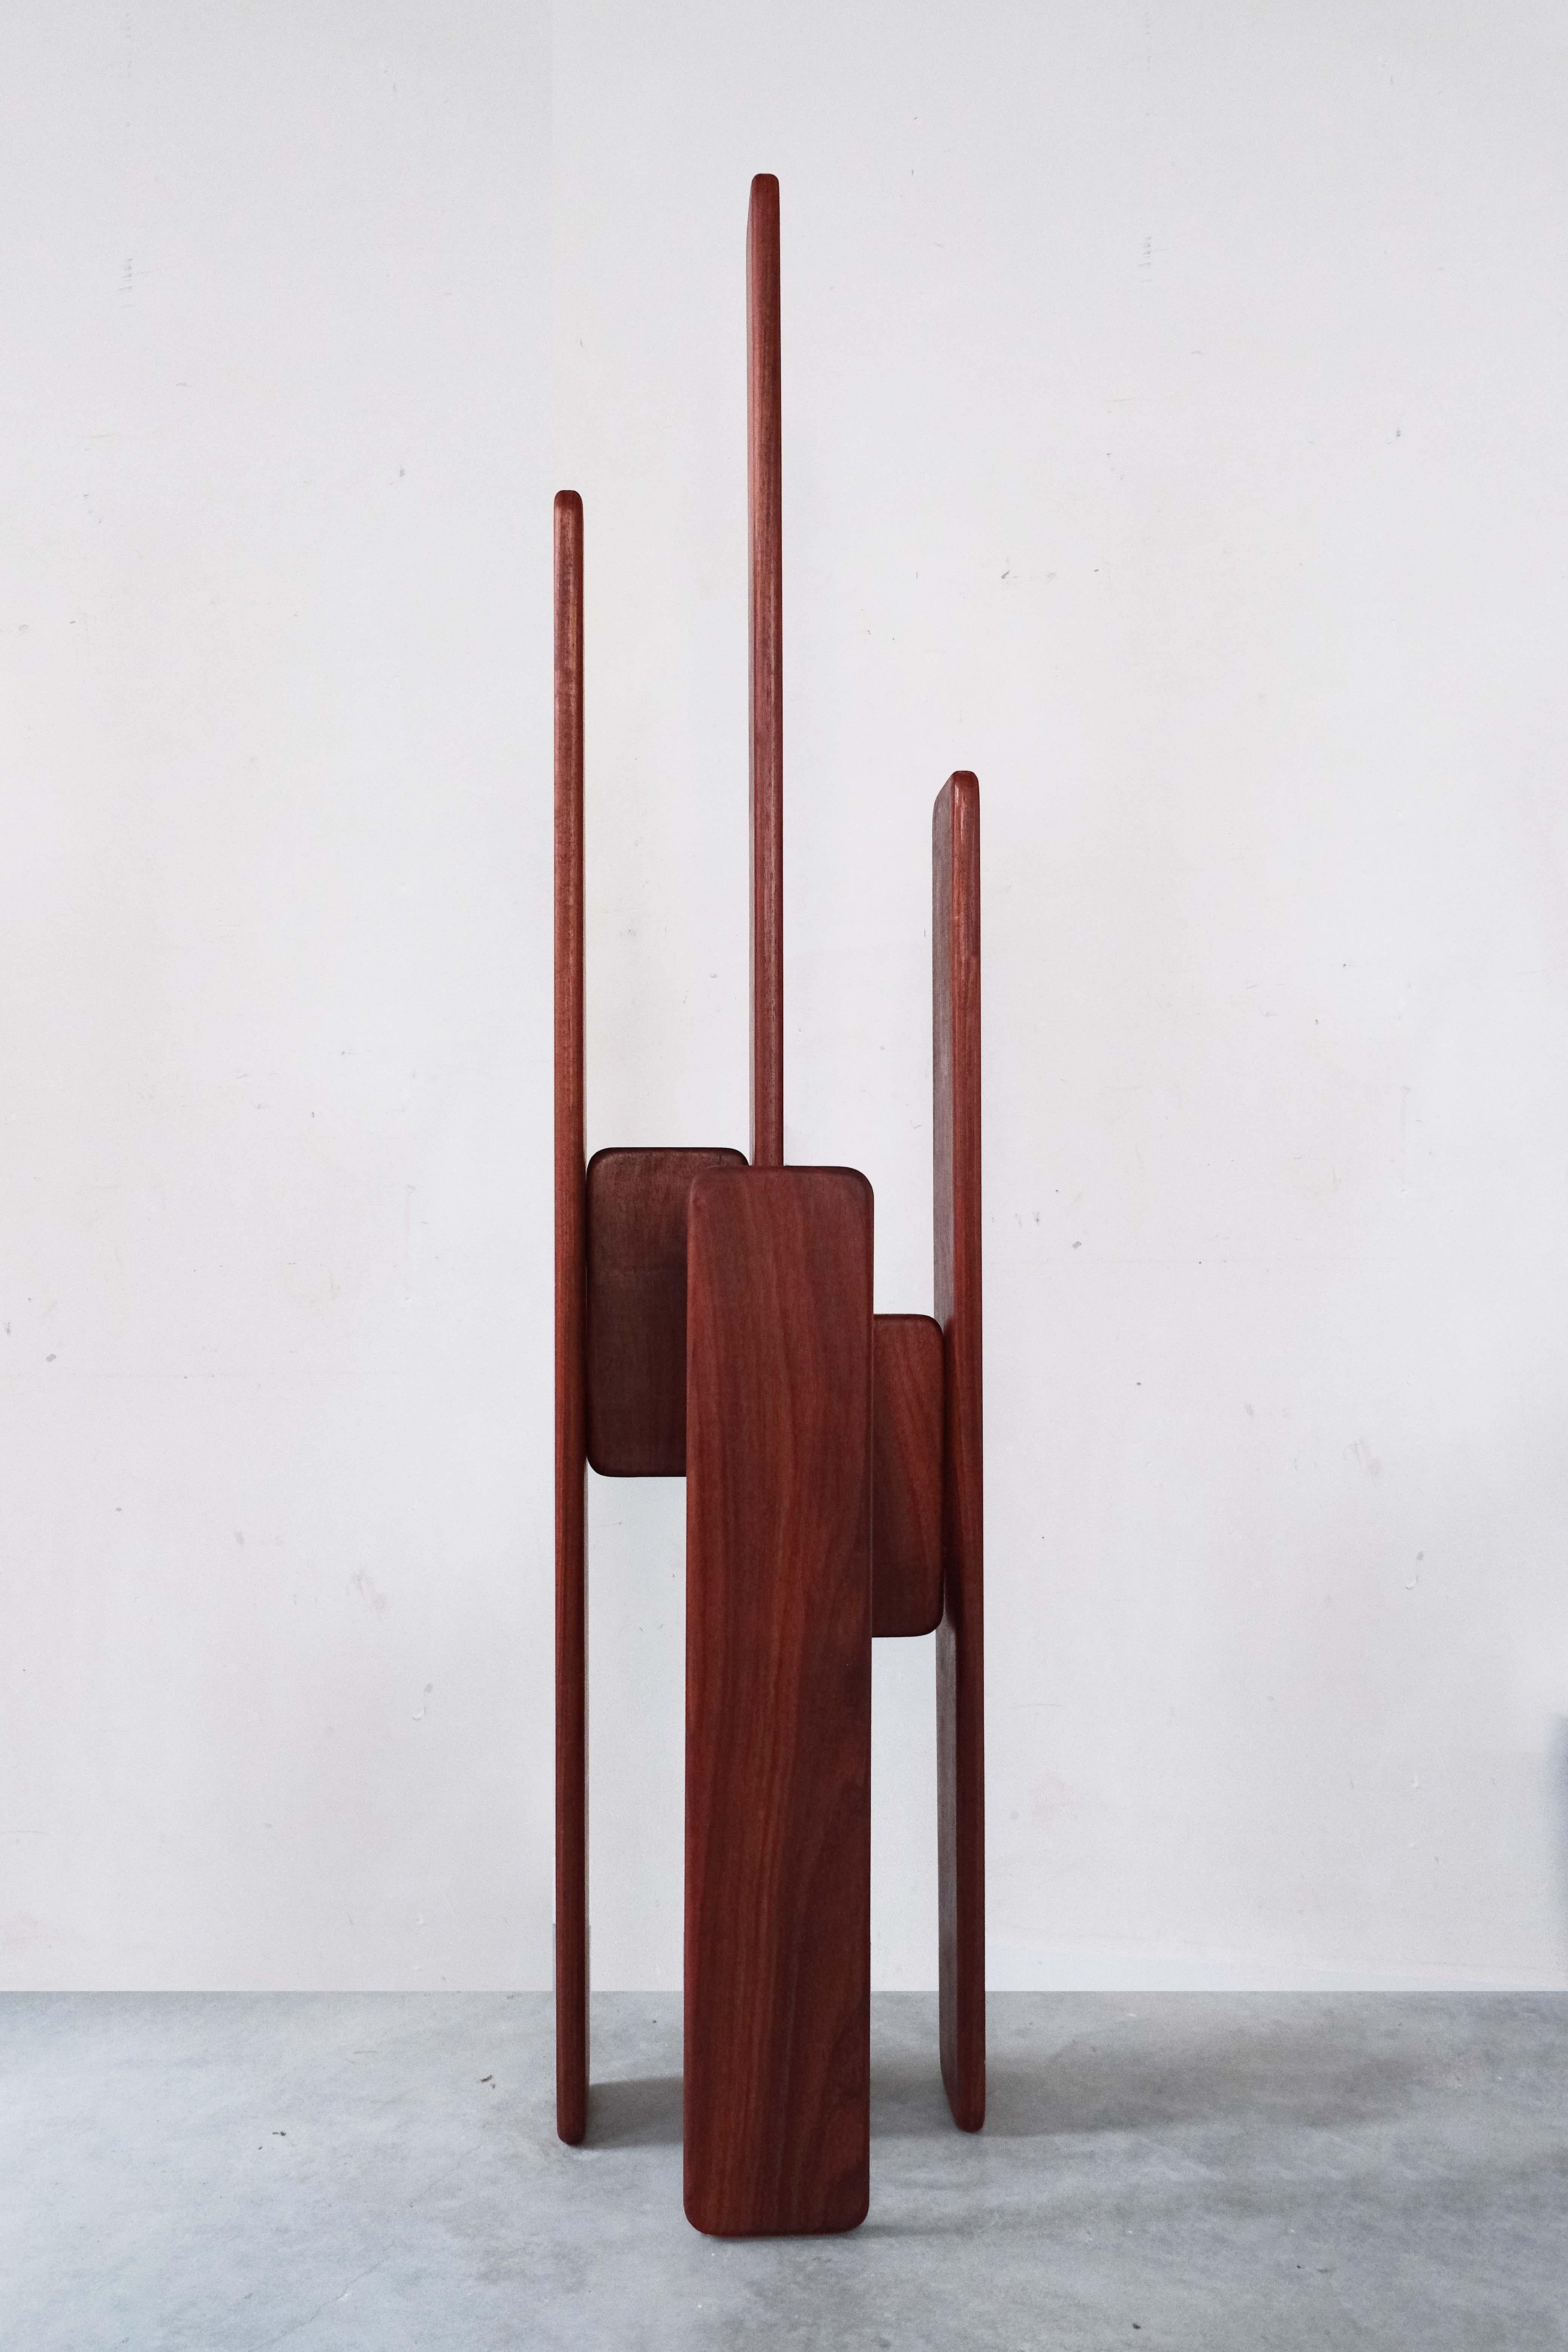 Garderobe von Atelier Ledure
Abmessungen: B 38 x T 34 x H 175 cm.
MATERIALIEN: Tropenholz, handgewachstes Finish

Der Garderobenständer ist ein skulpturales Element zum Aufhängen von Kleidung. Es kann sowohl für Privatkunden als auch für den